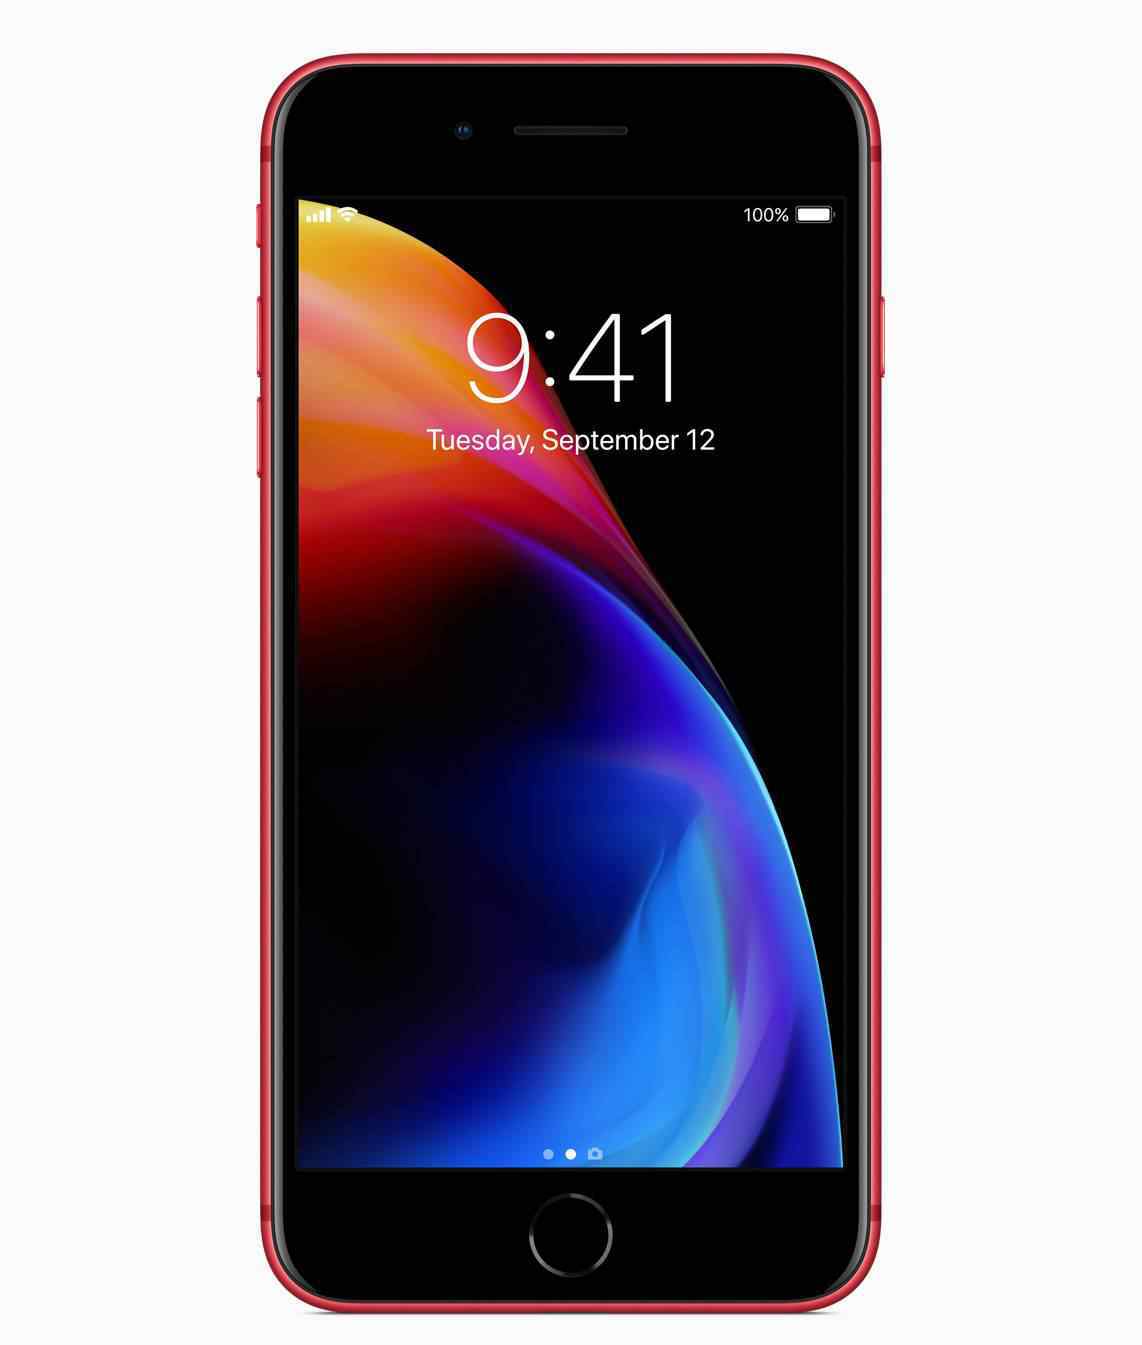 iphone红色 苹果发布红色iPhone 8特别版  iphone8红色限量版值得入手吗？